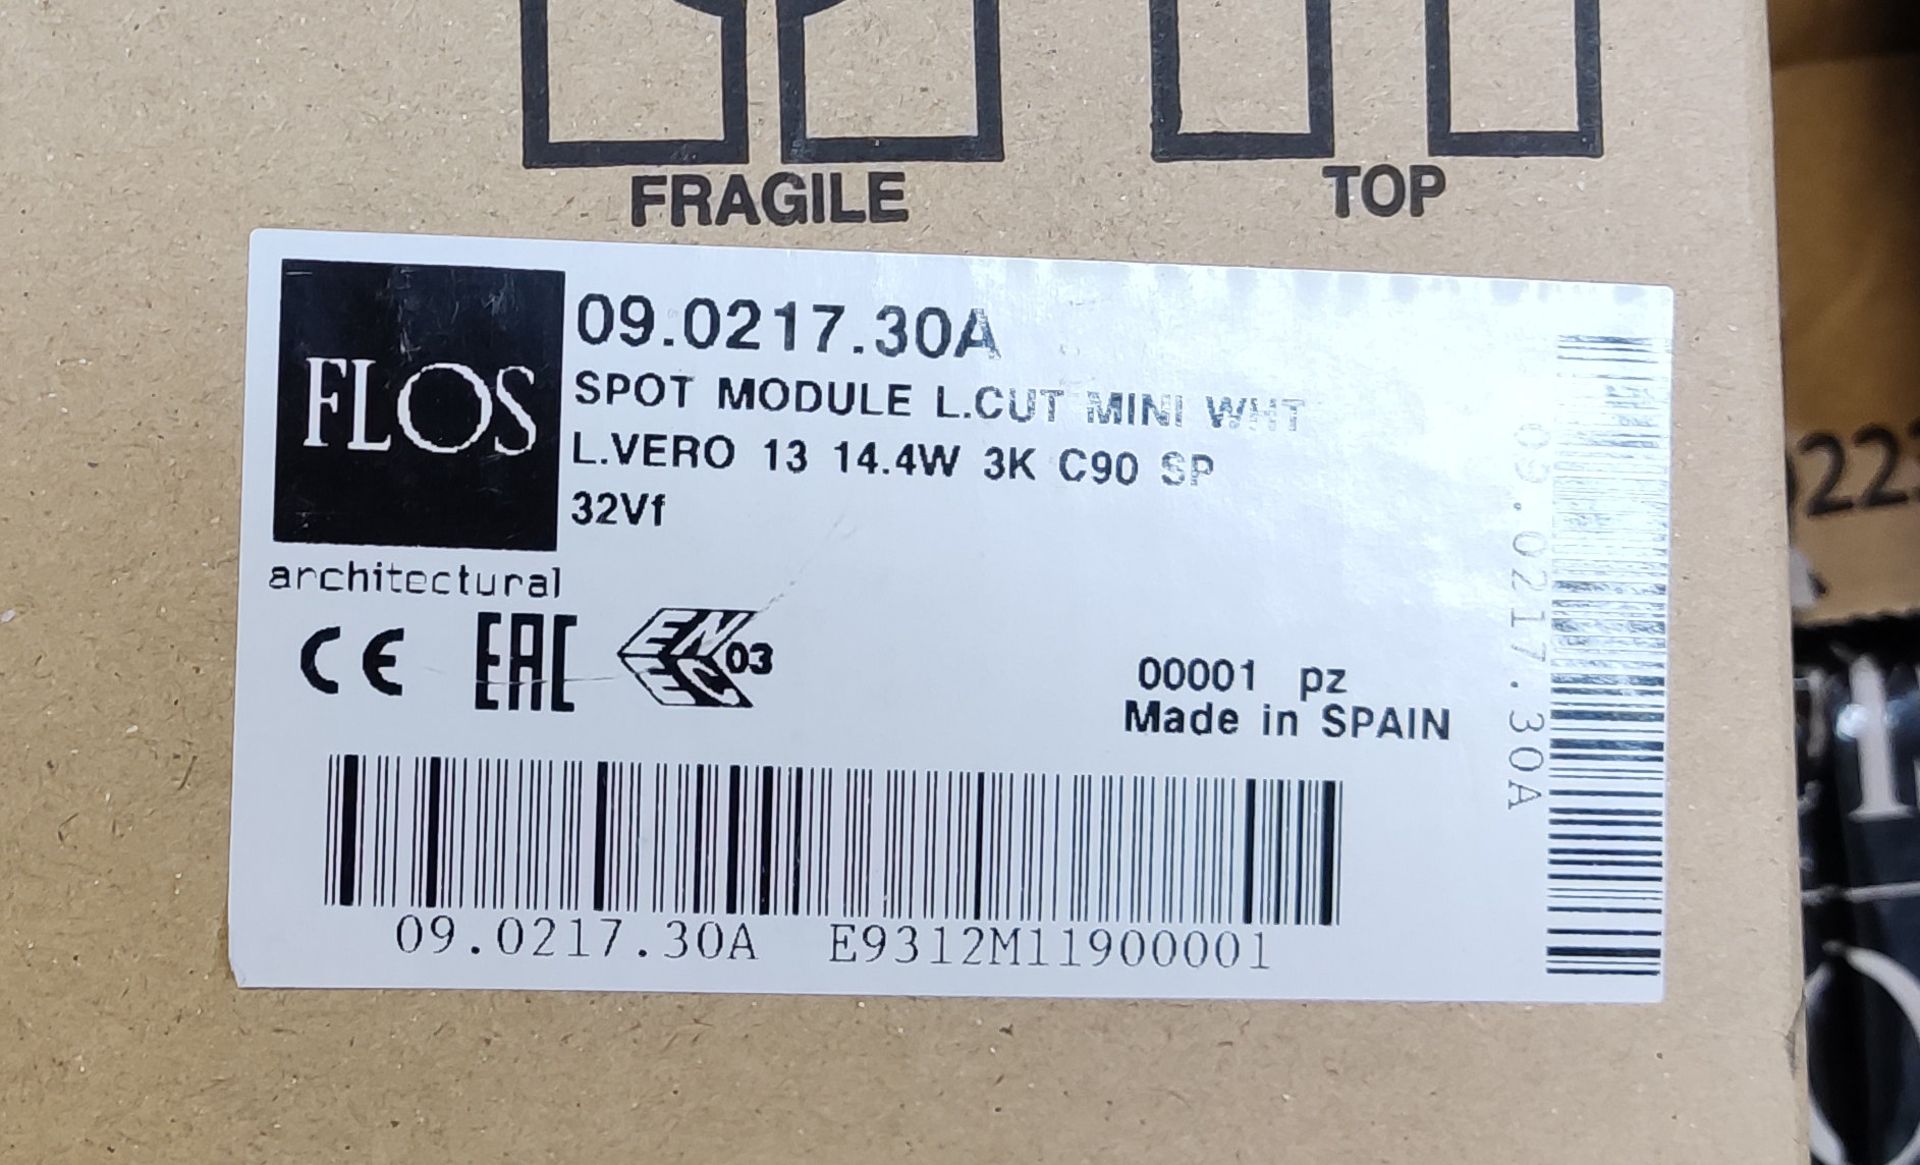 6 x FLOS Flos Spot Module Light Cut Mini Led White - L.Vero 12 14.4W 3K C90 Sp 32Vf - 09.0217. - Image 2 of 3